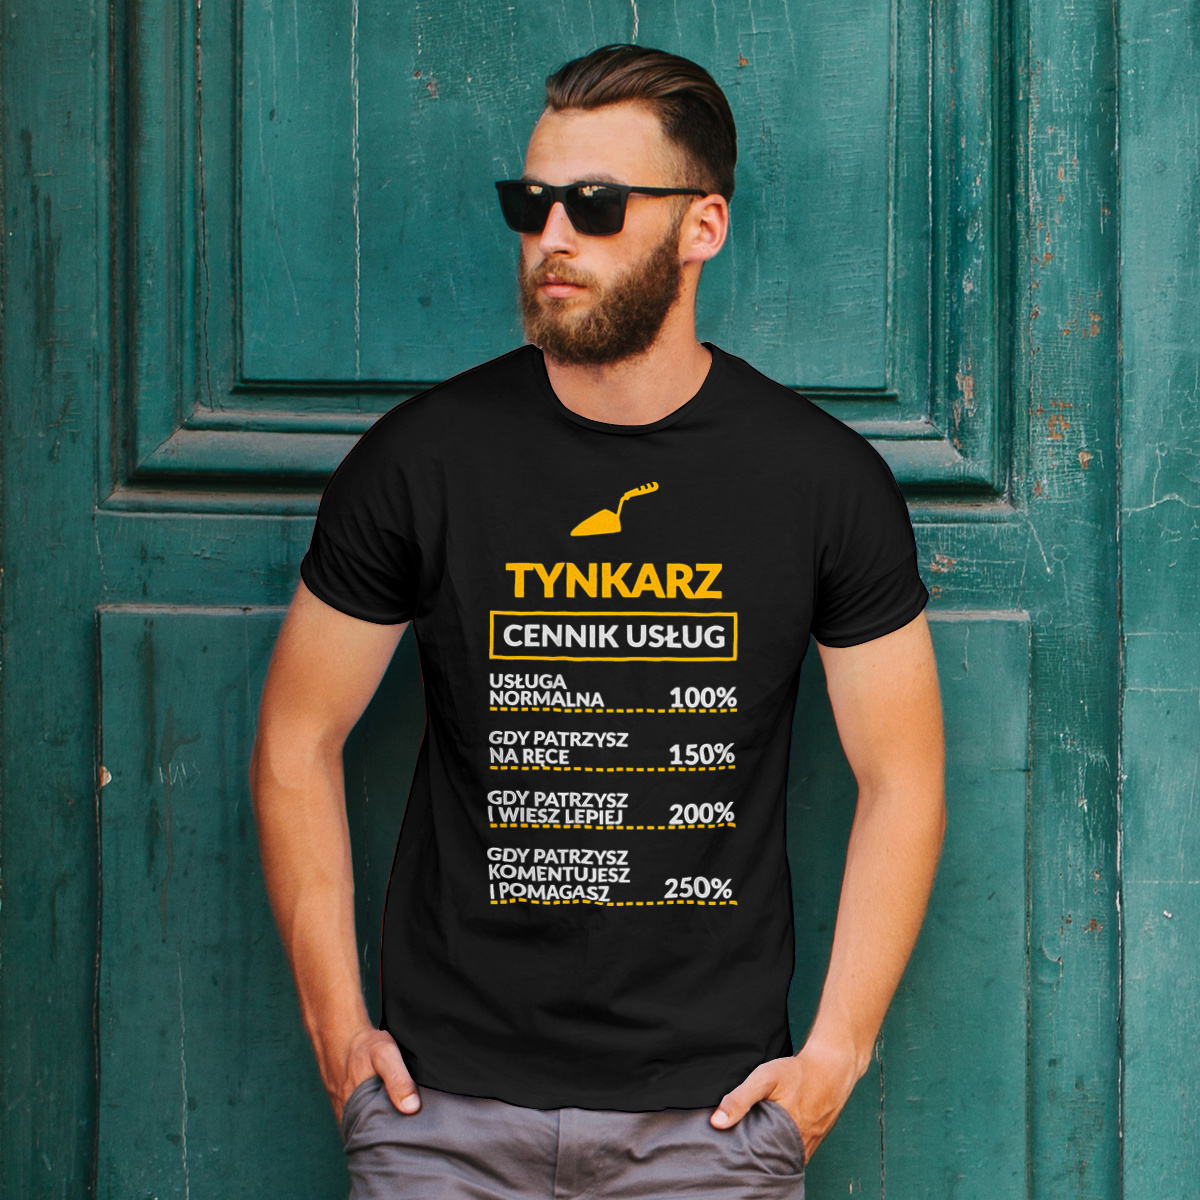 Tynkarz - Cennik Usług - Męska Koszulka Czarna